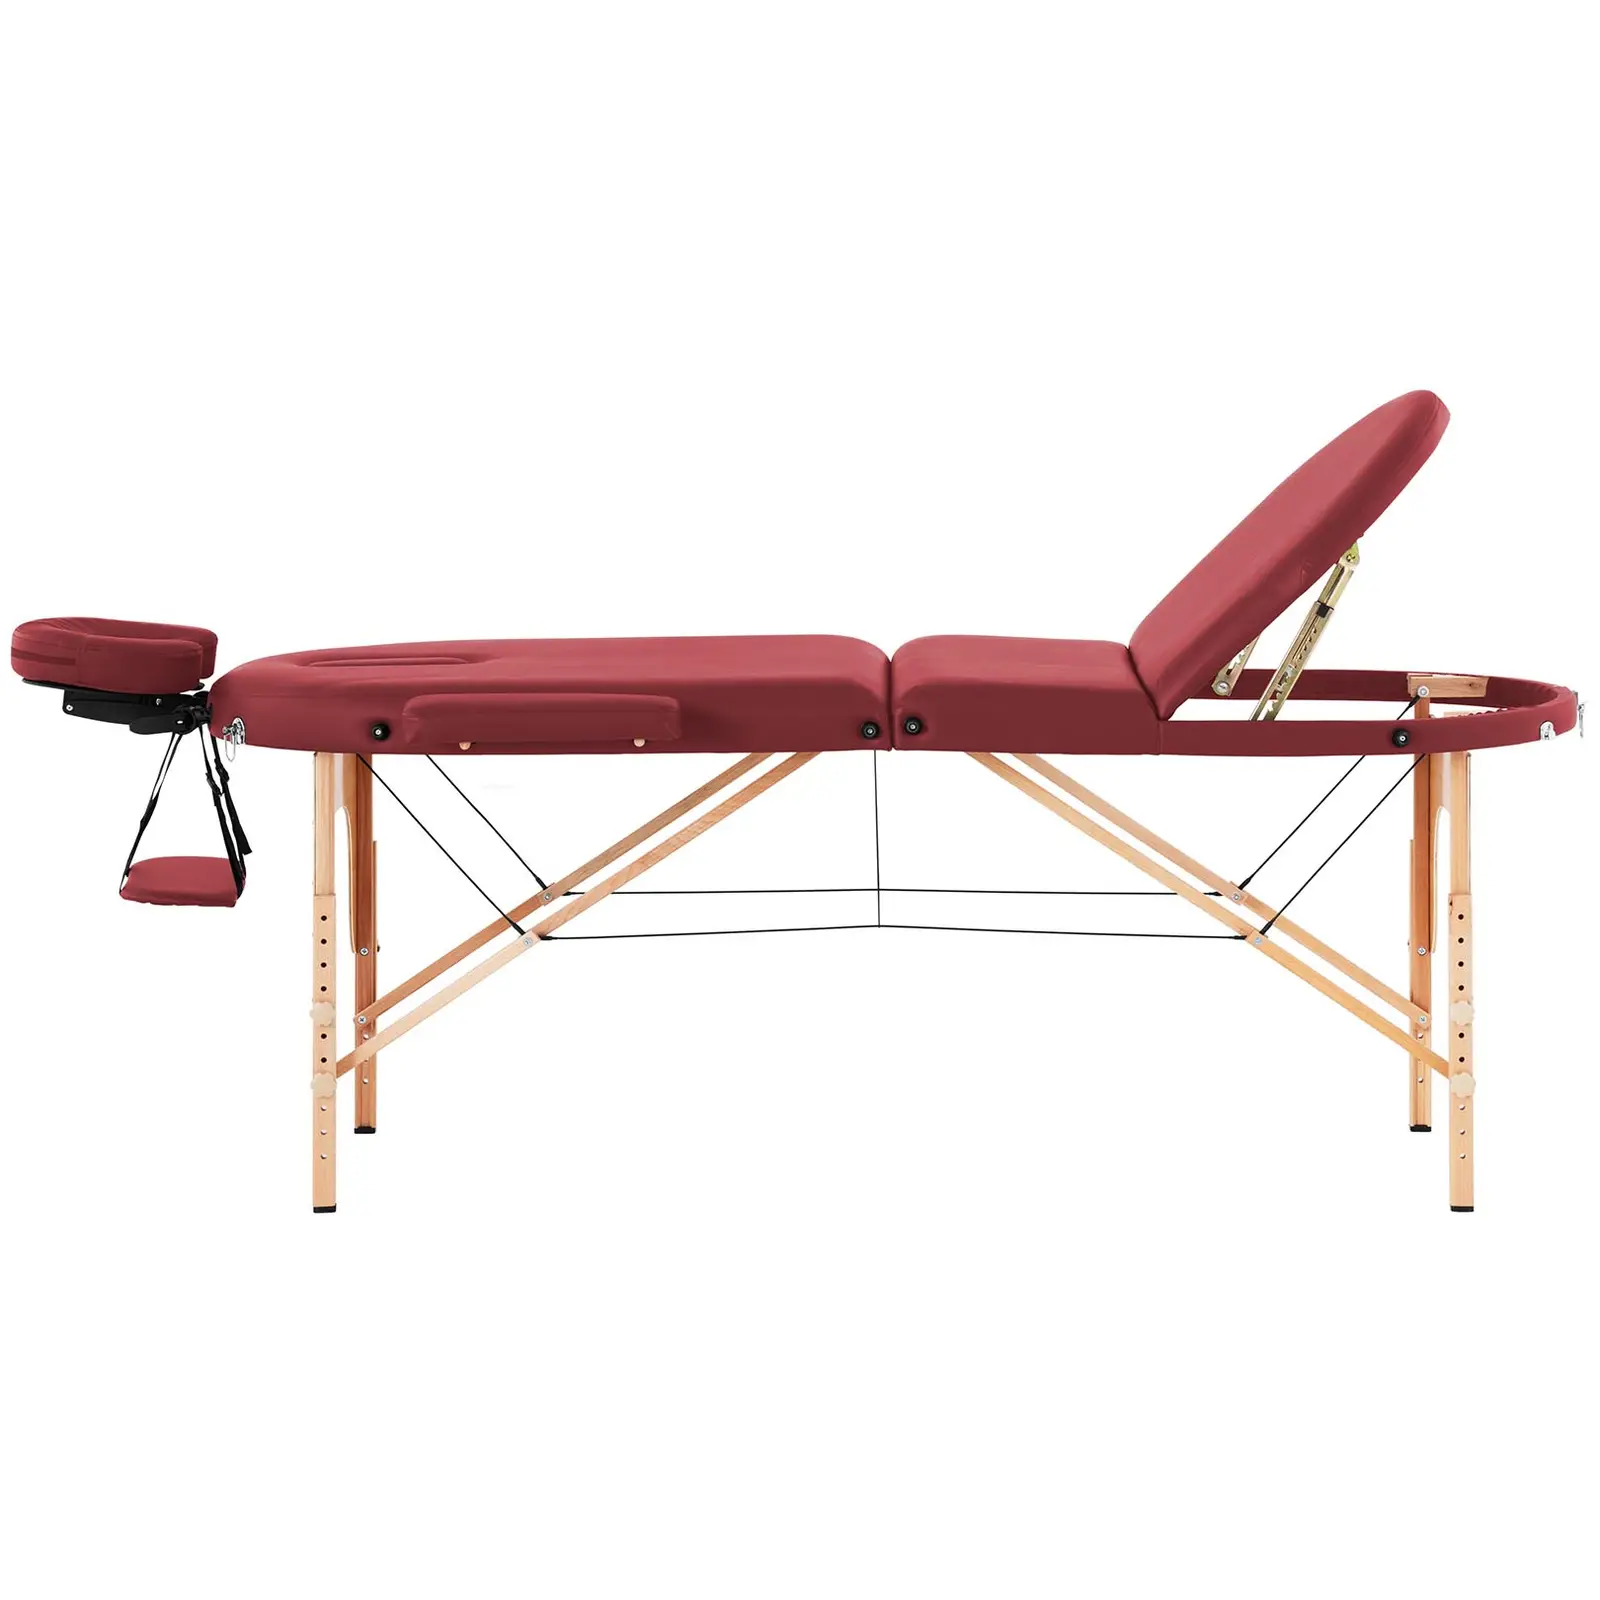 Camilla de masaje plegable - 185-211 x 70-88 x 63-85  cm - 227 kg - Rojo